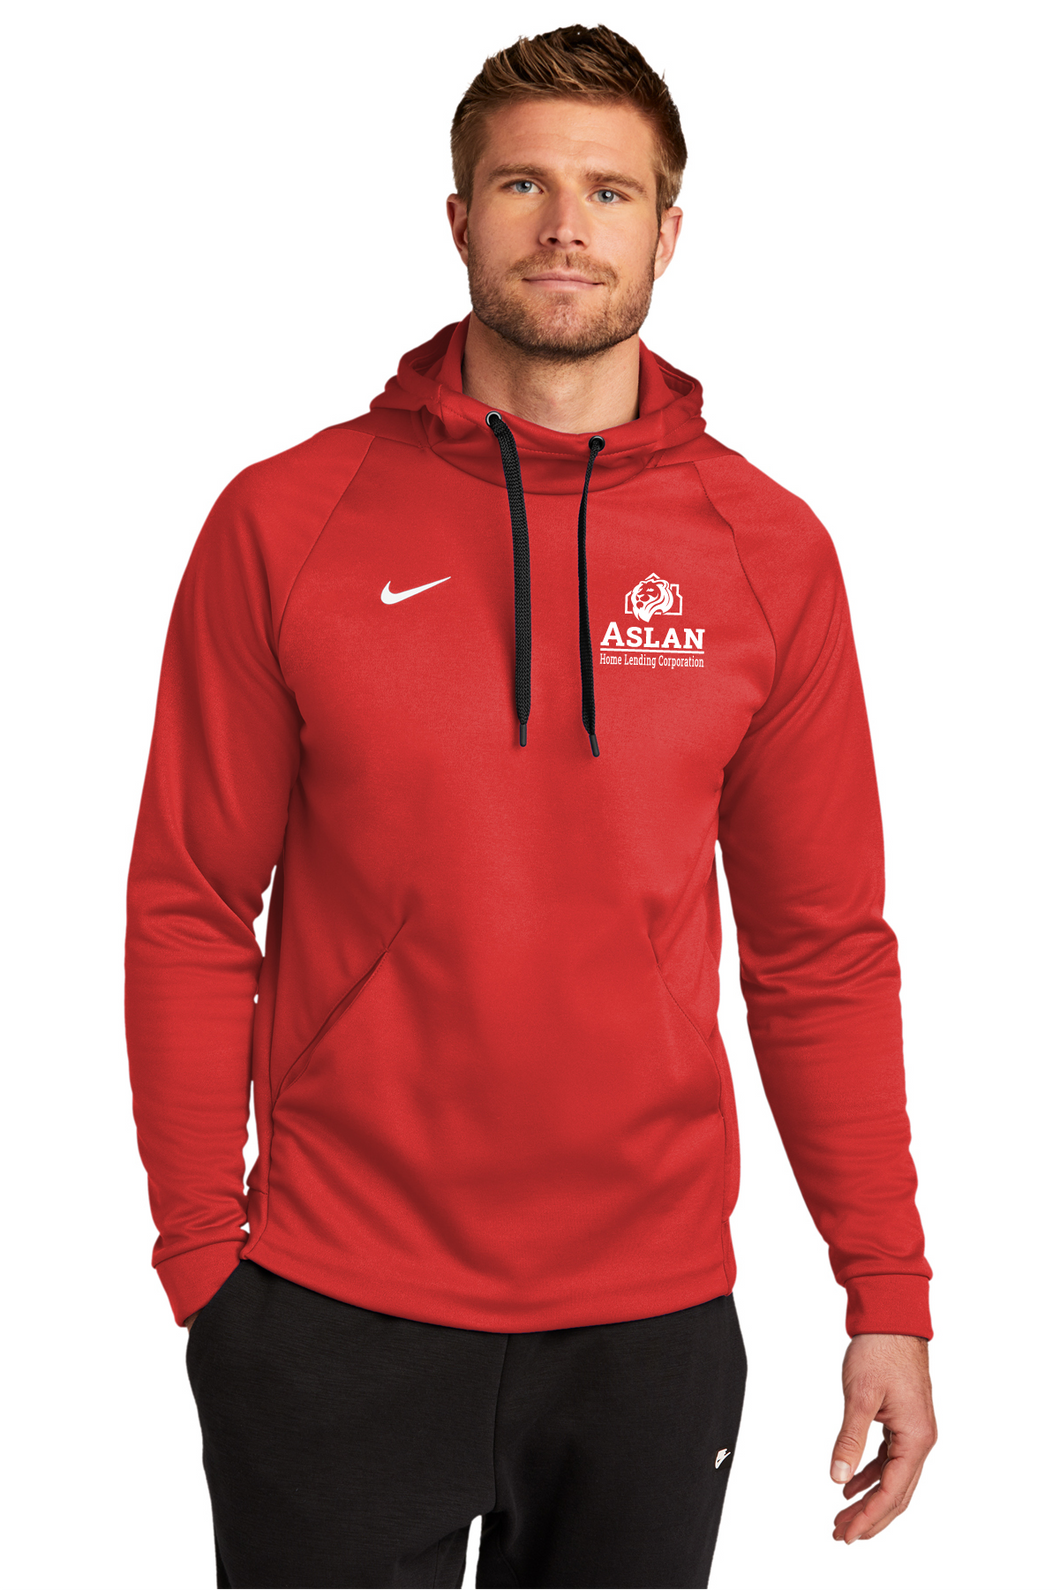 Aslan Nike Therma-FIT Pullover Fleece Hoodie Red